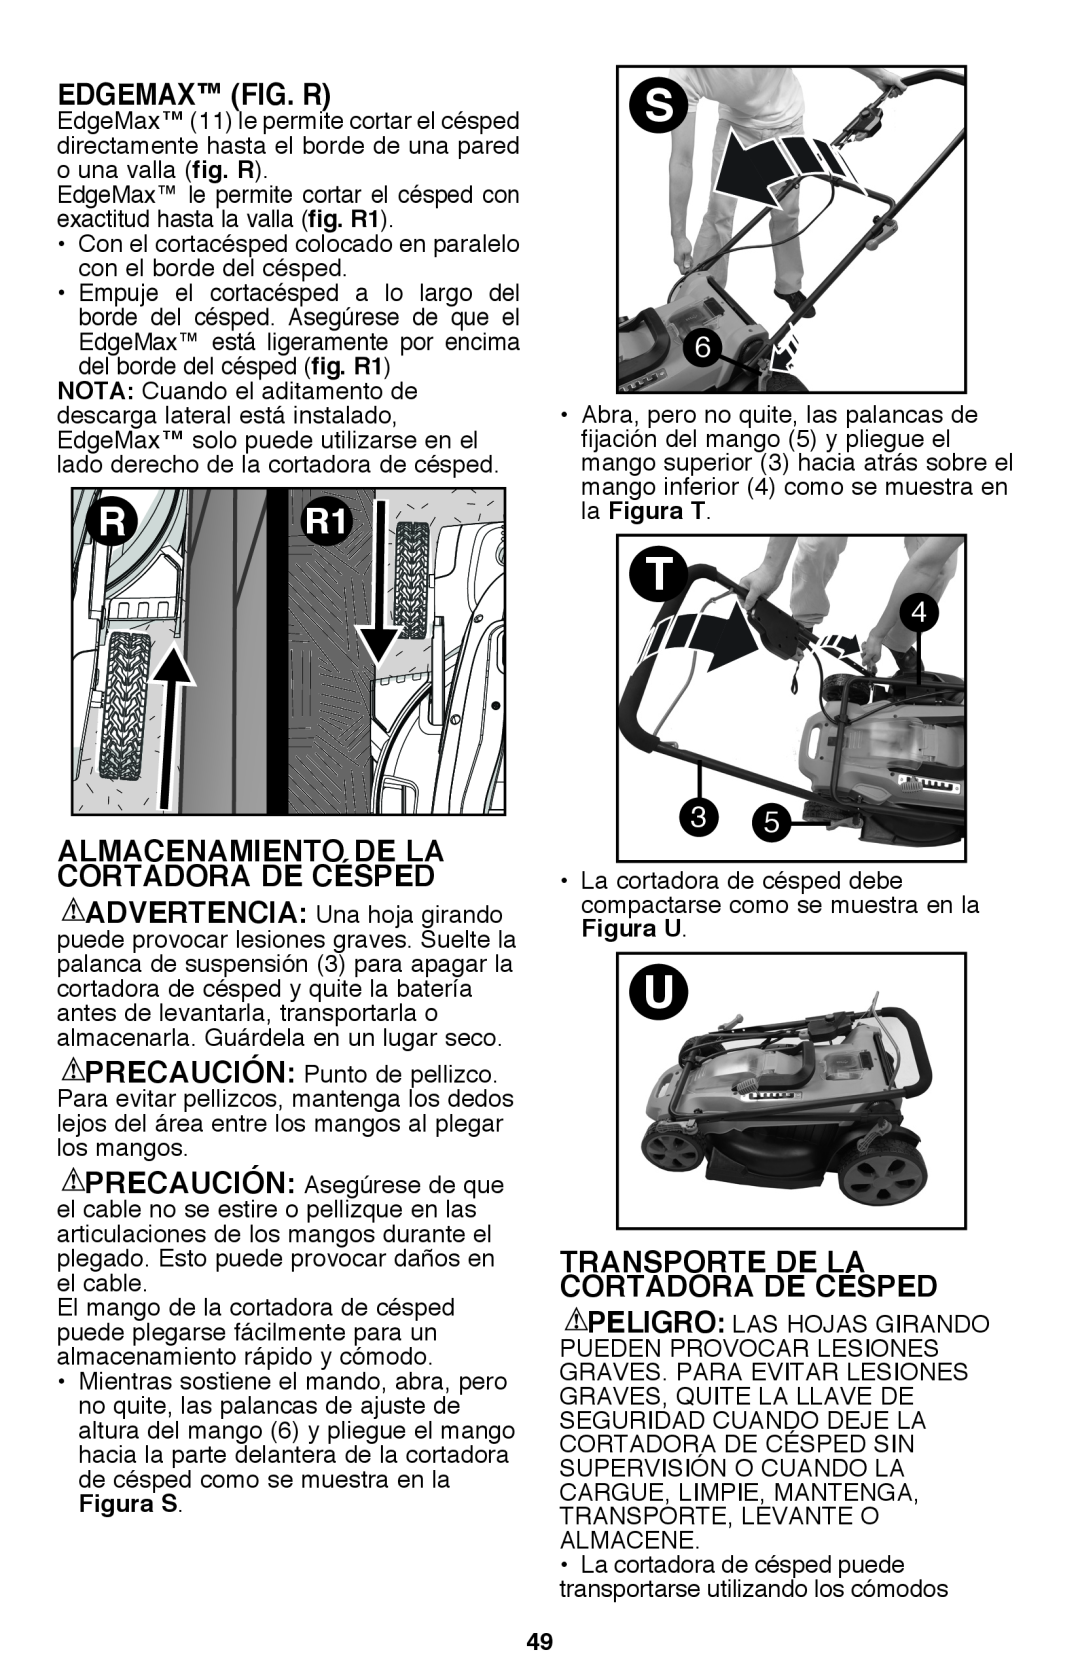 Black & Decker CM2040 EdgeMax fig. R, Almacenamiento De La Cortadora De Césped, Transporte De La Cortadora De Césped 